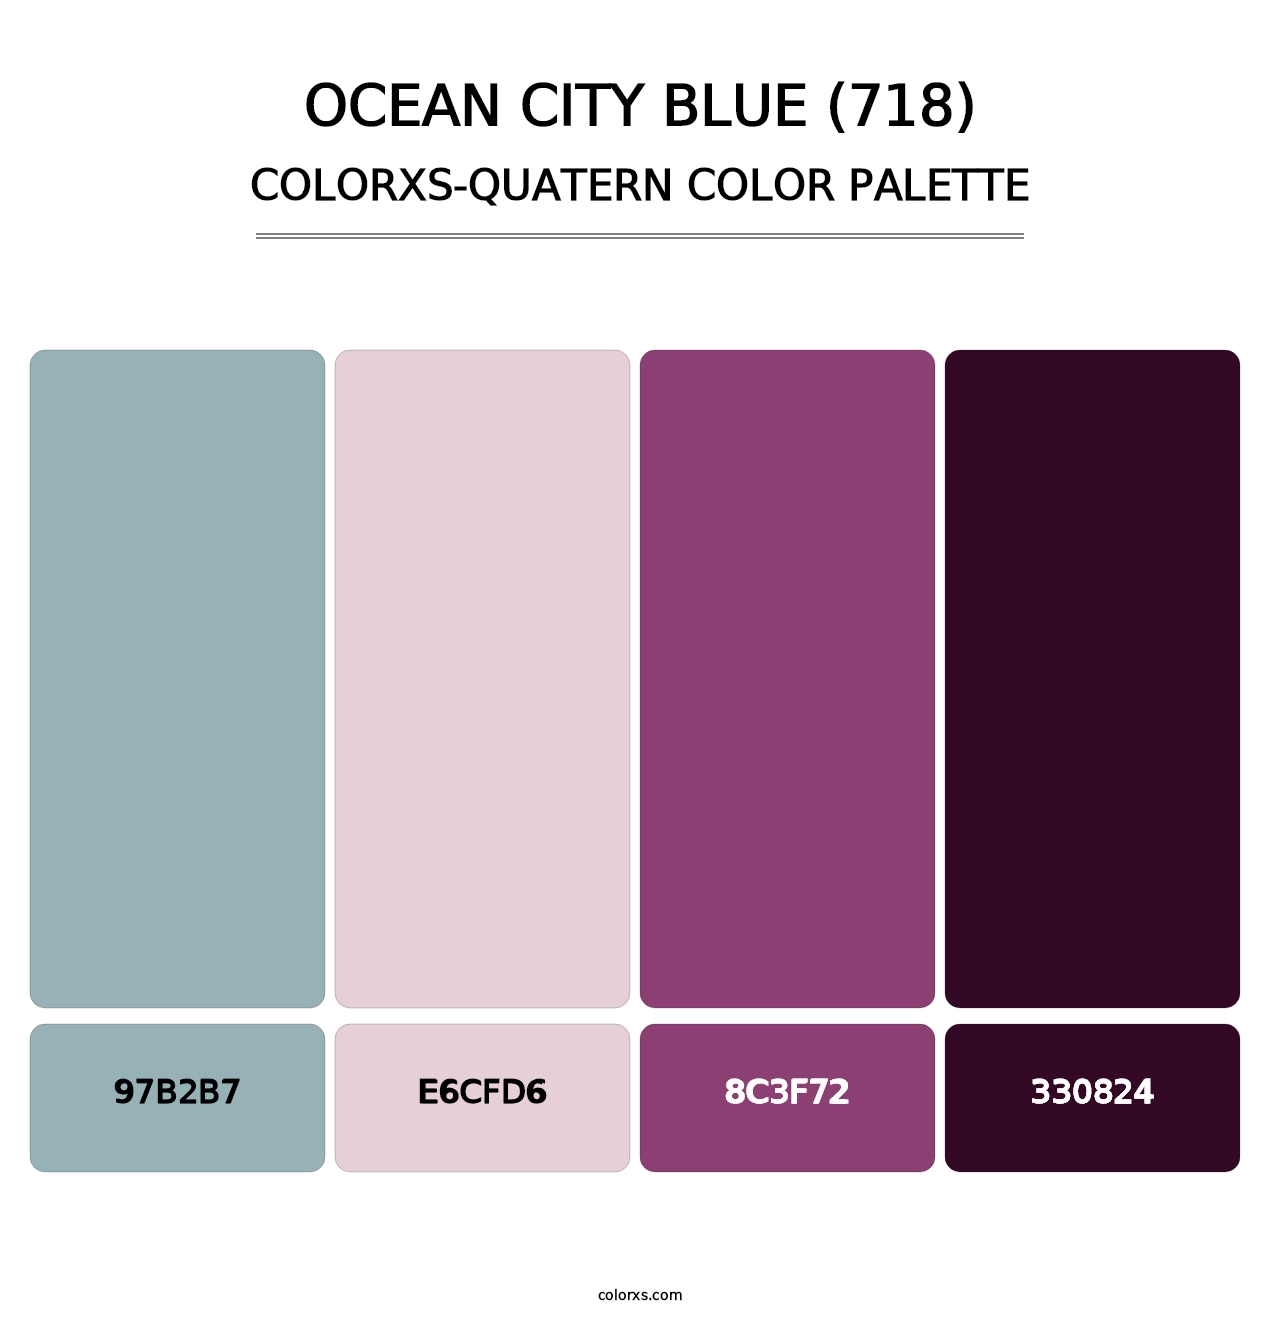 Ocean City Blue (718) - Colorxs Quatern Palette